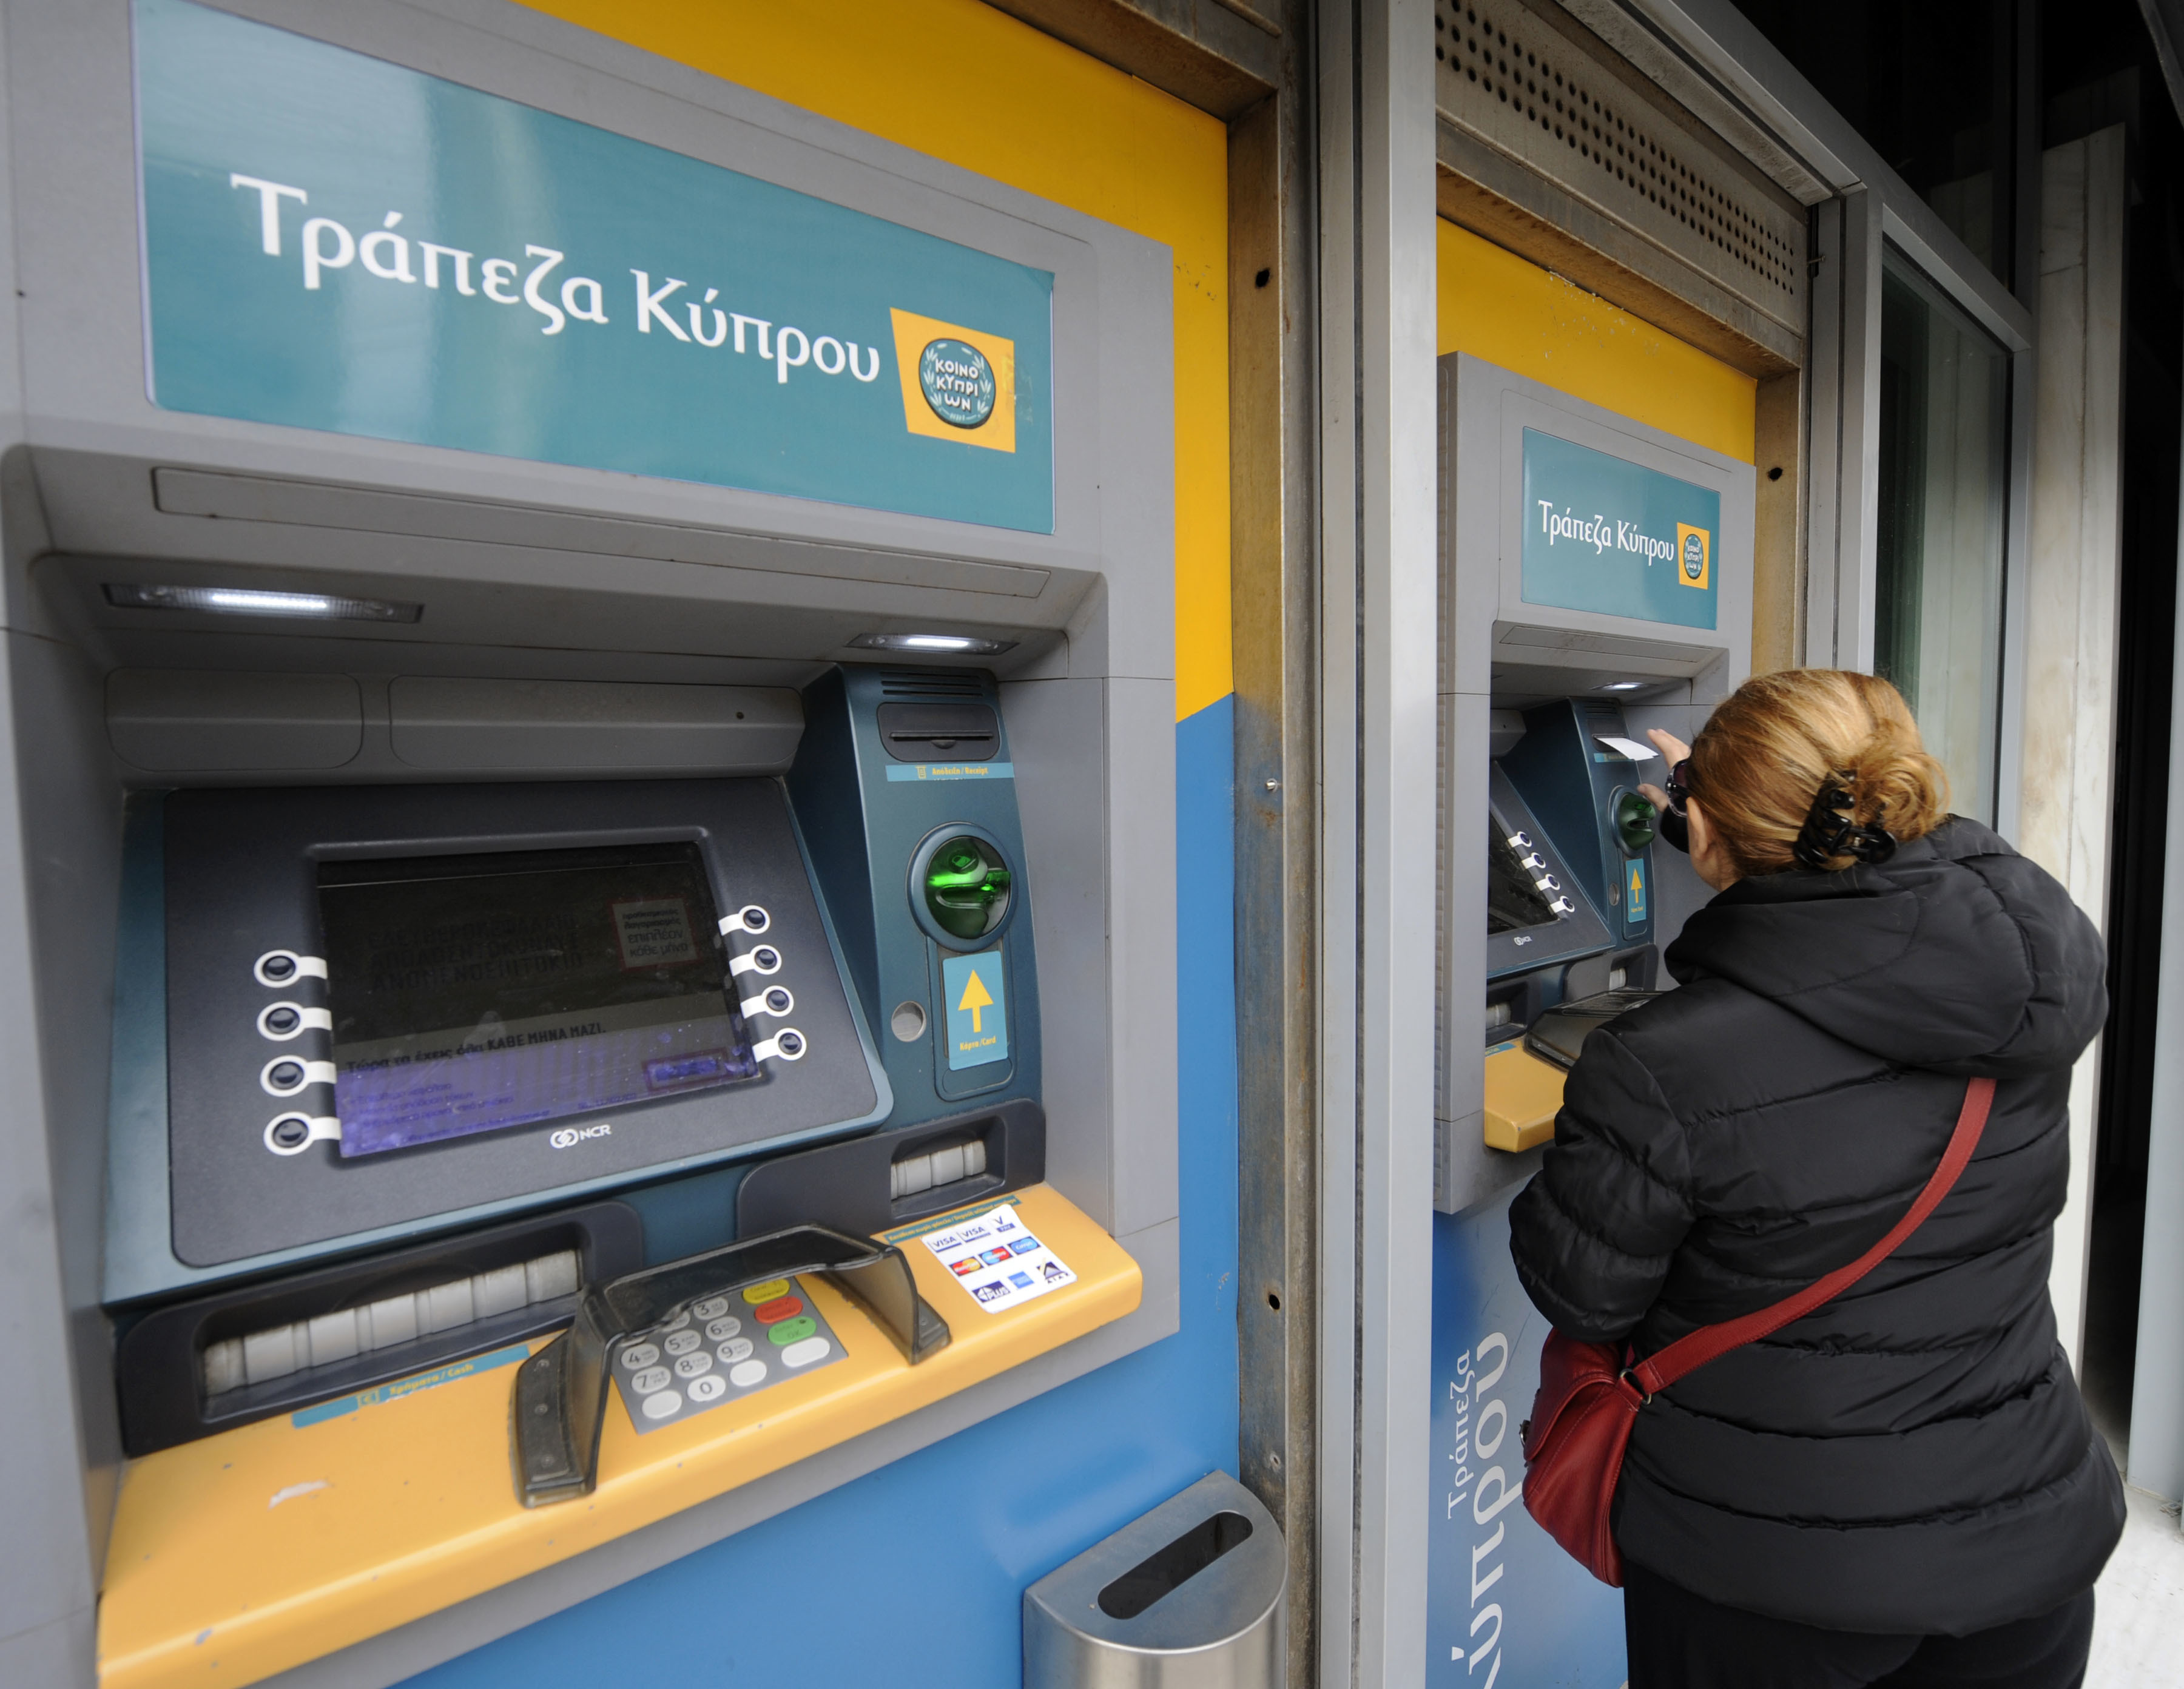 Κλειστά θα παραμείνουν τα υποκαταστήματα της Τράπεζας Κύπρου στη Ρουμανία